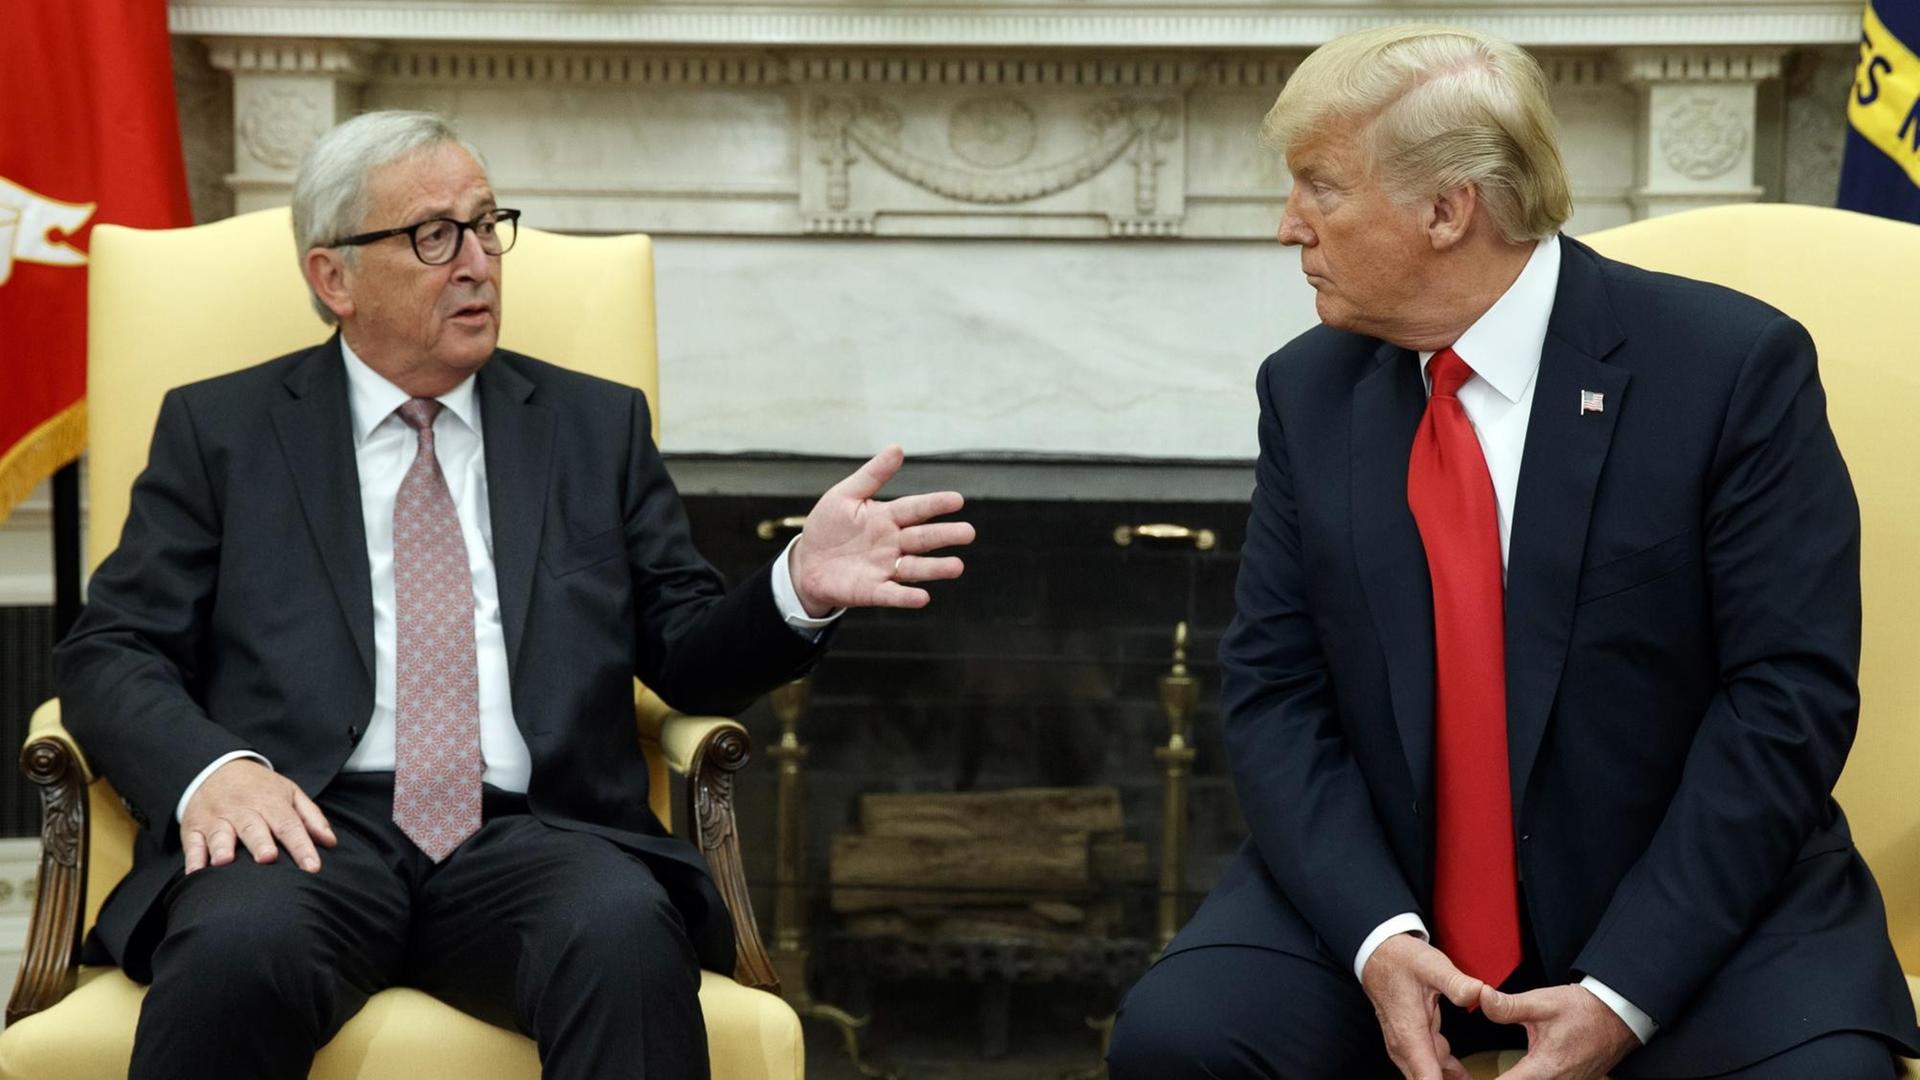 Das Bild zeigt EU-Kommissionspräsident Jean-Claude Juncker (l.), wie er im Weißen Haus von US-Präsident Donald Trump empfangen wird. Beide sitzen auf heöö bezogenen Stühlen nebeneinander vor einem Kamin und unterhalten sich miteinander. Beide machen ernste Gesichter.